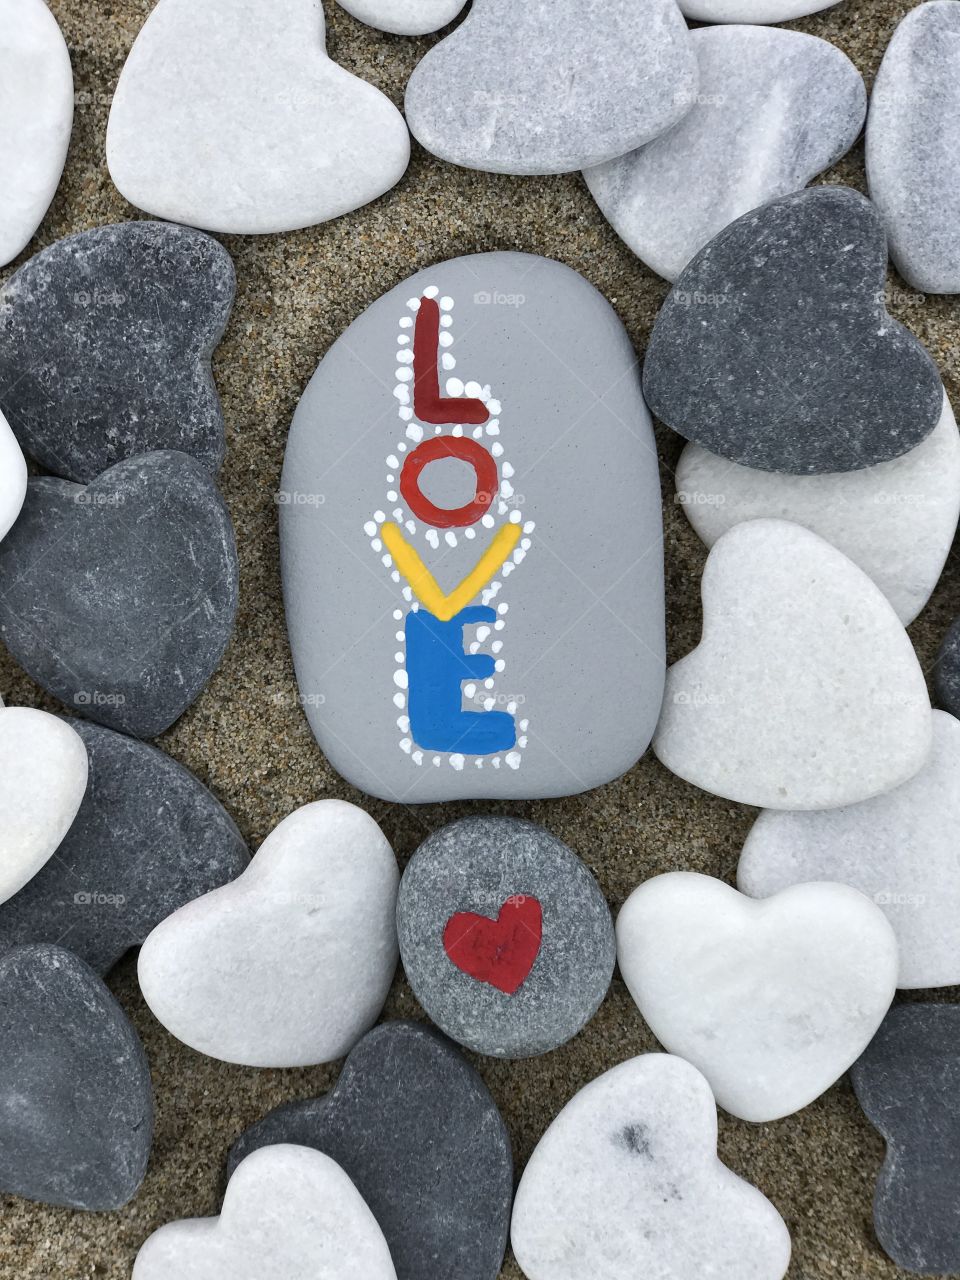 Love written on the pebble stone